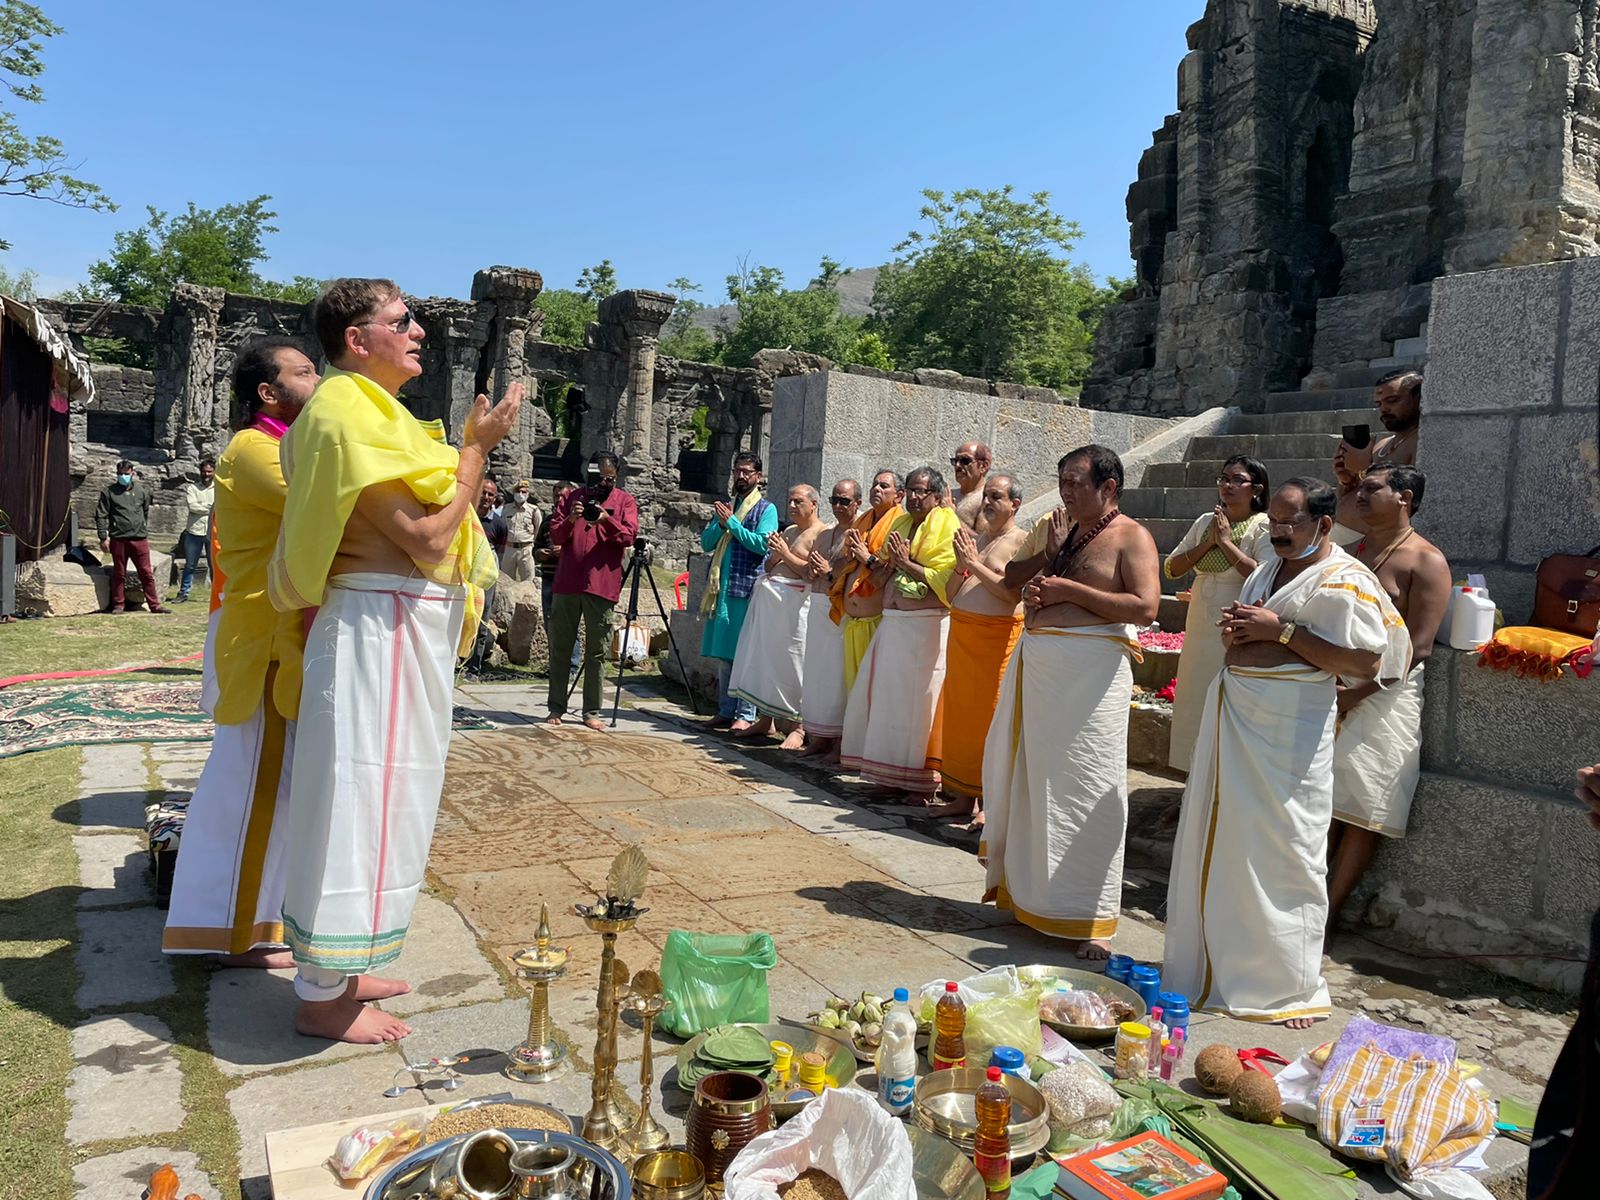 J&K के मार्तंड सूर्य मंदिर में दो पूजा समारोहों पर पुरातत्व विभाग ने खड़े किए सवाल, कहा- संरक्षित स्थलों पर प्रार्थना की इजाजत नहीं